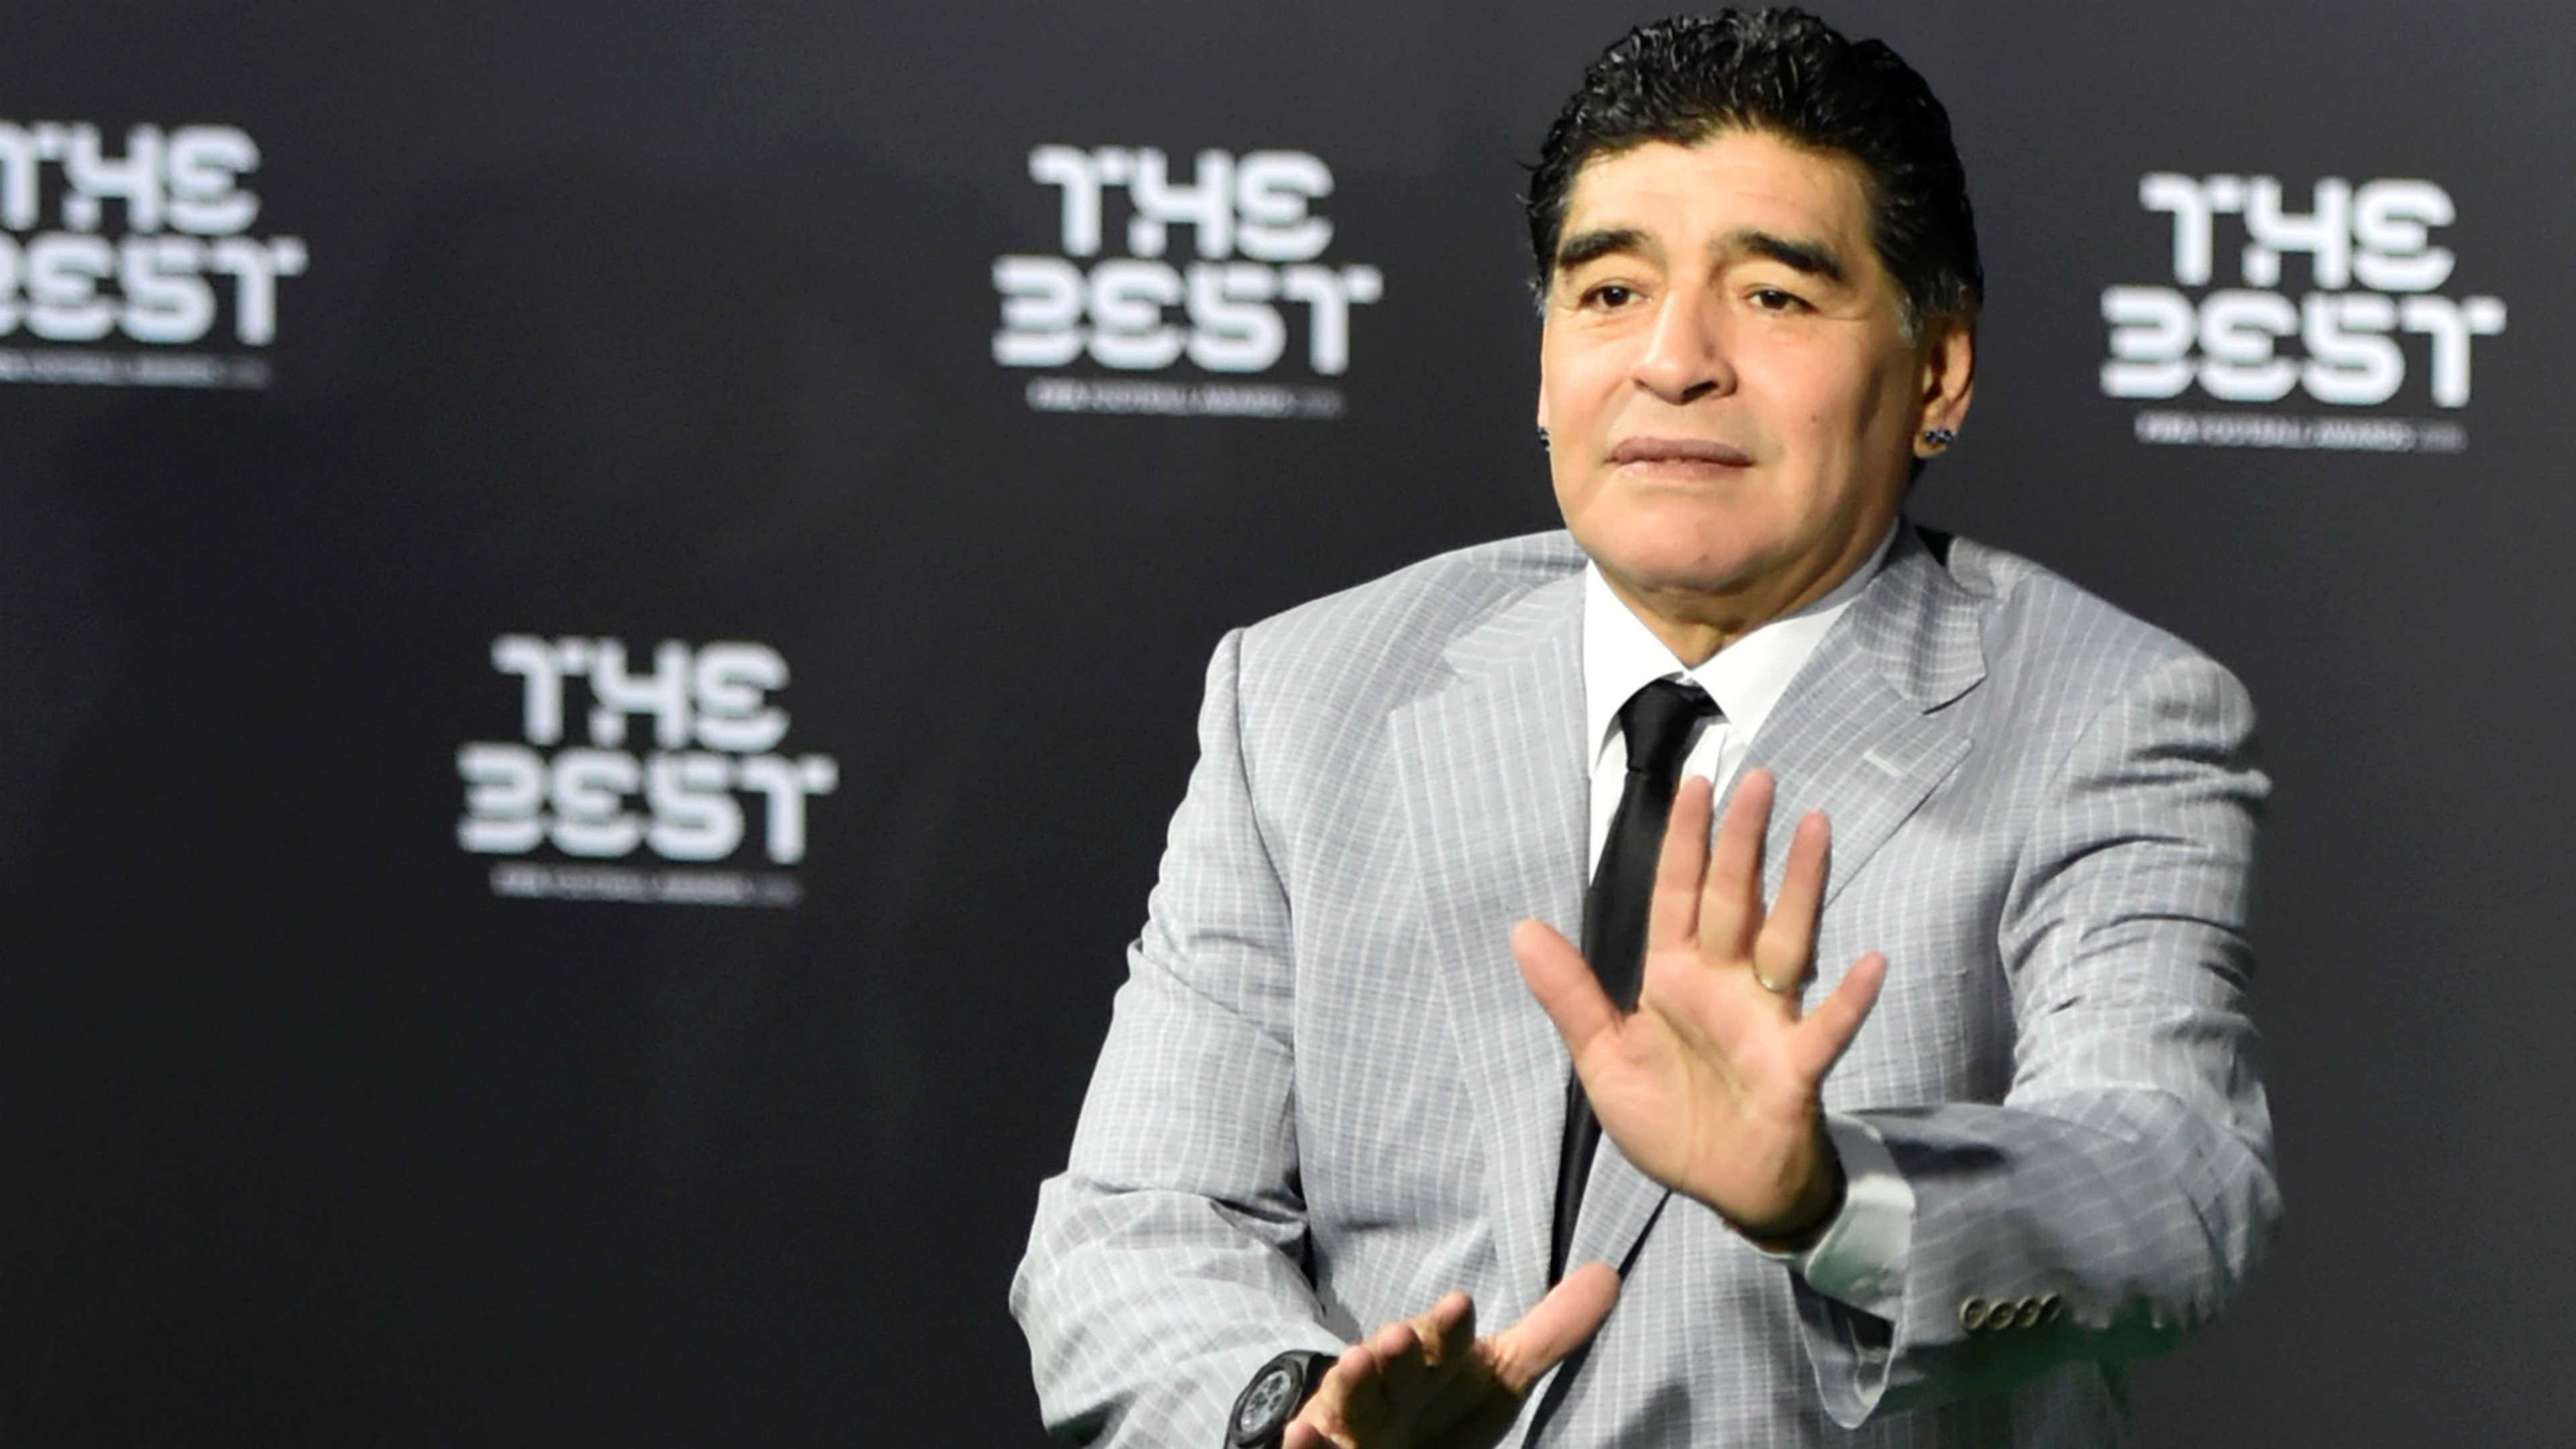 Diego Maradona The Best FIFA Football Awards 2016